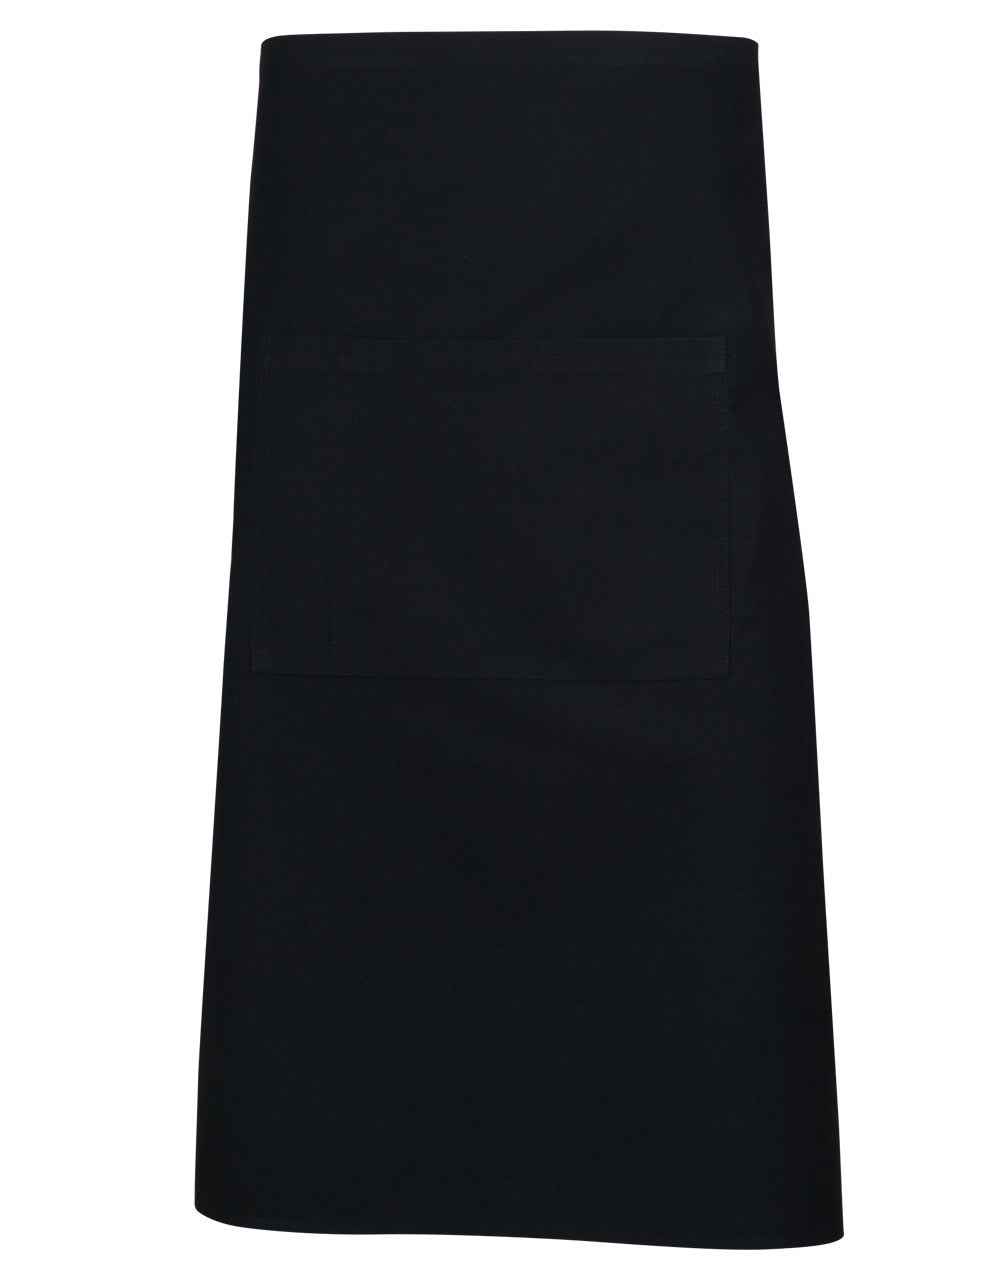 [AP02] Long waist apron w86xh70cm